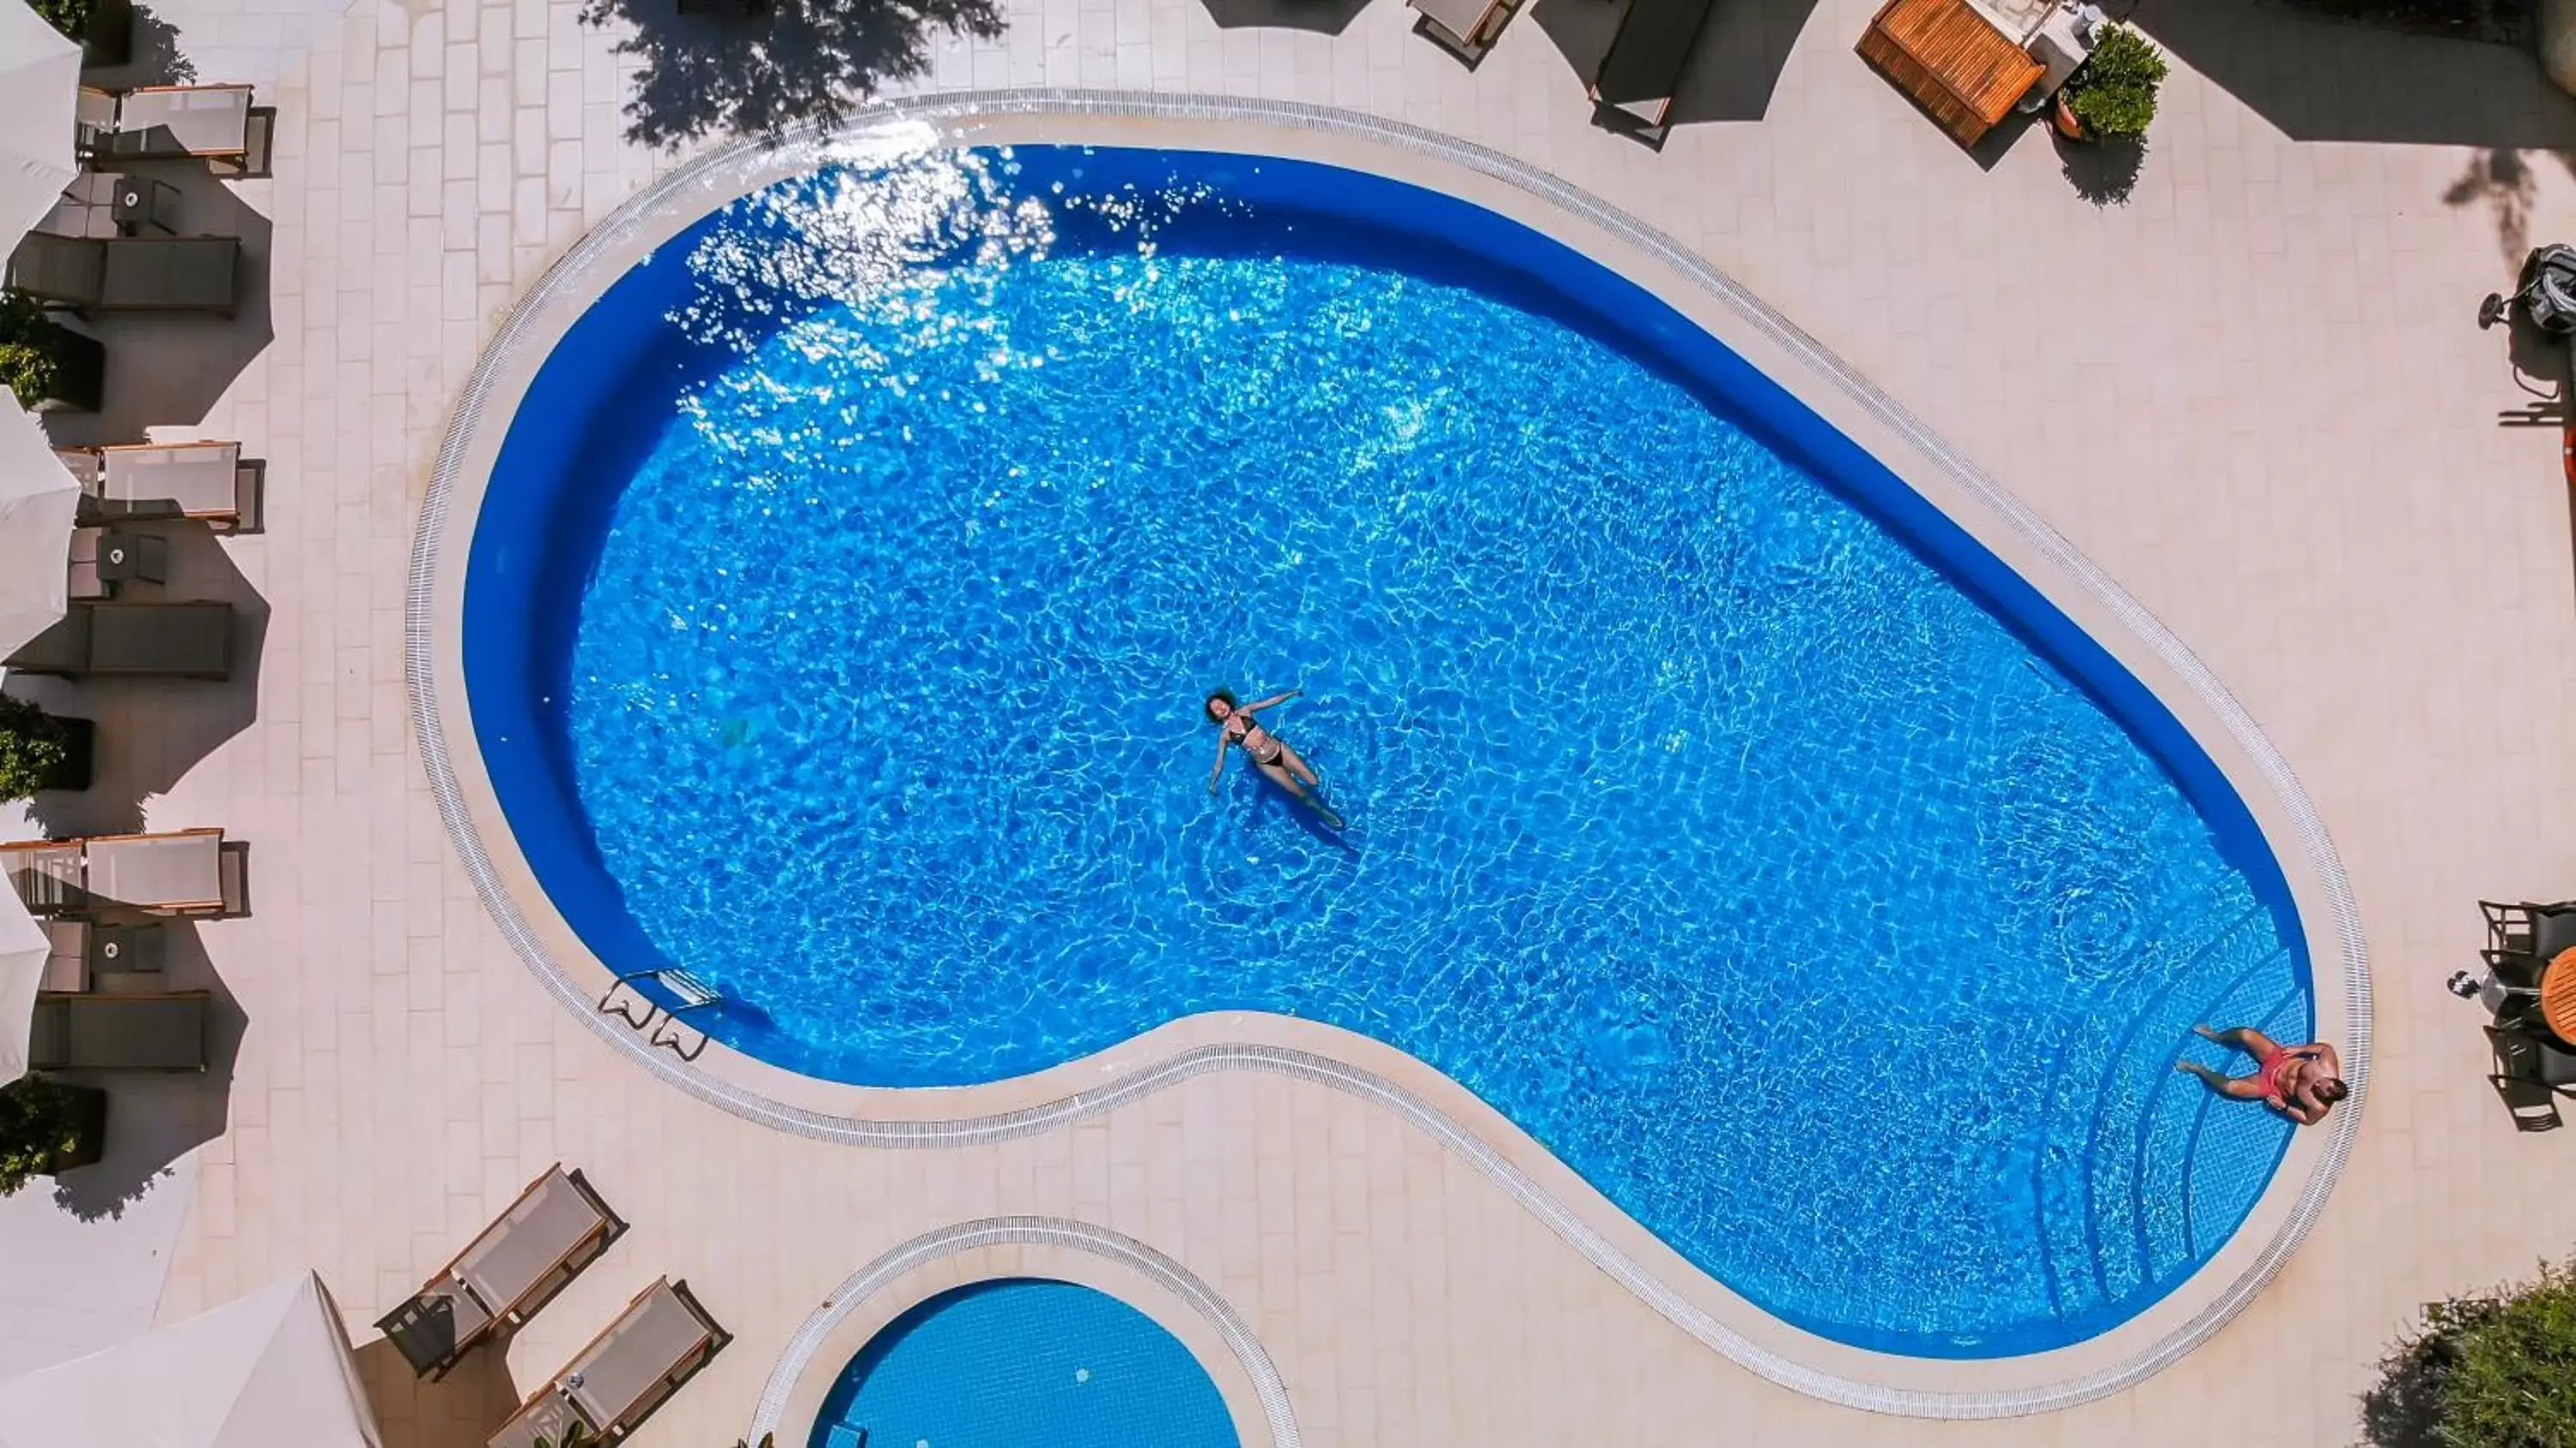 Pool View in Olea Nova Hotel